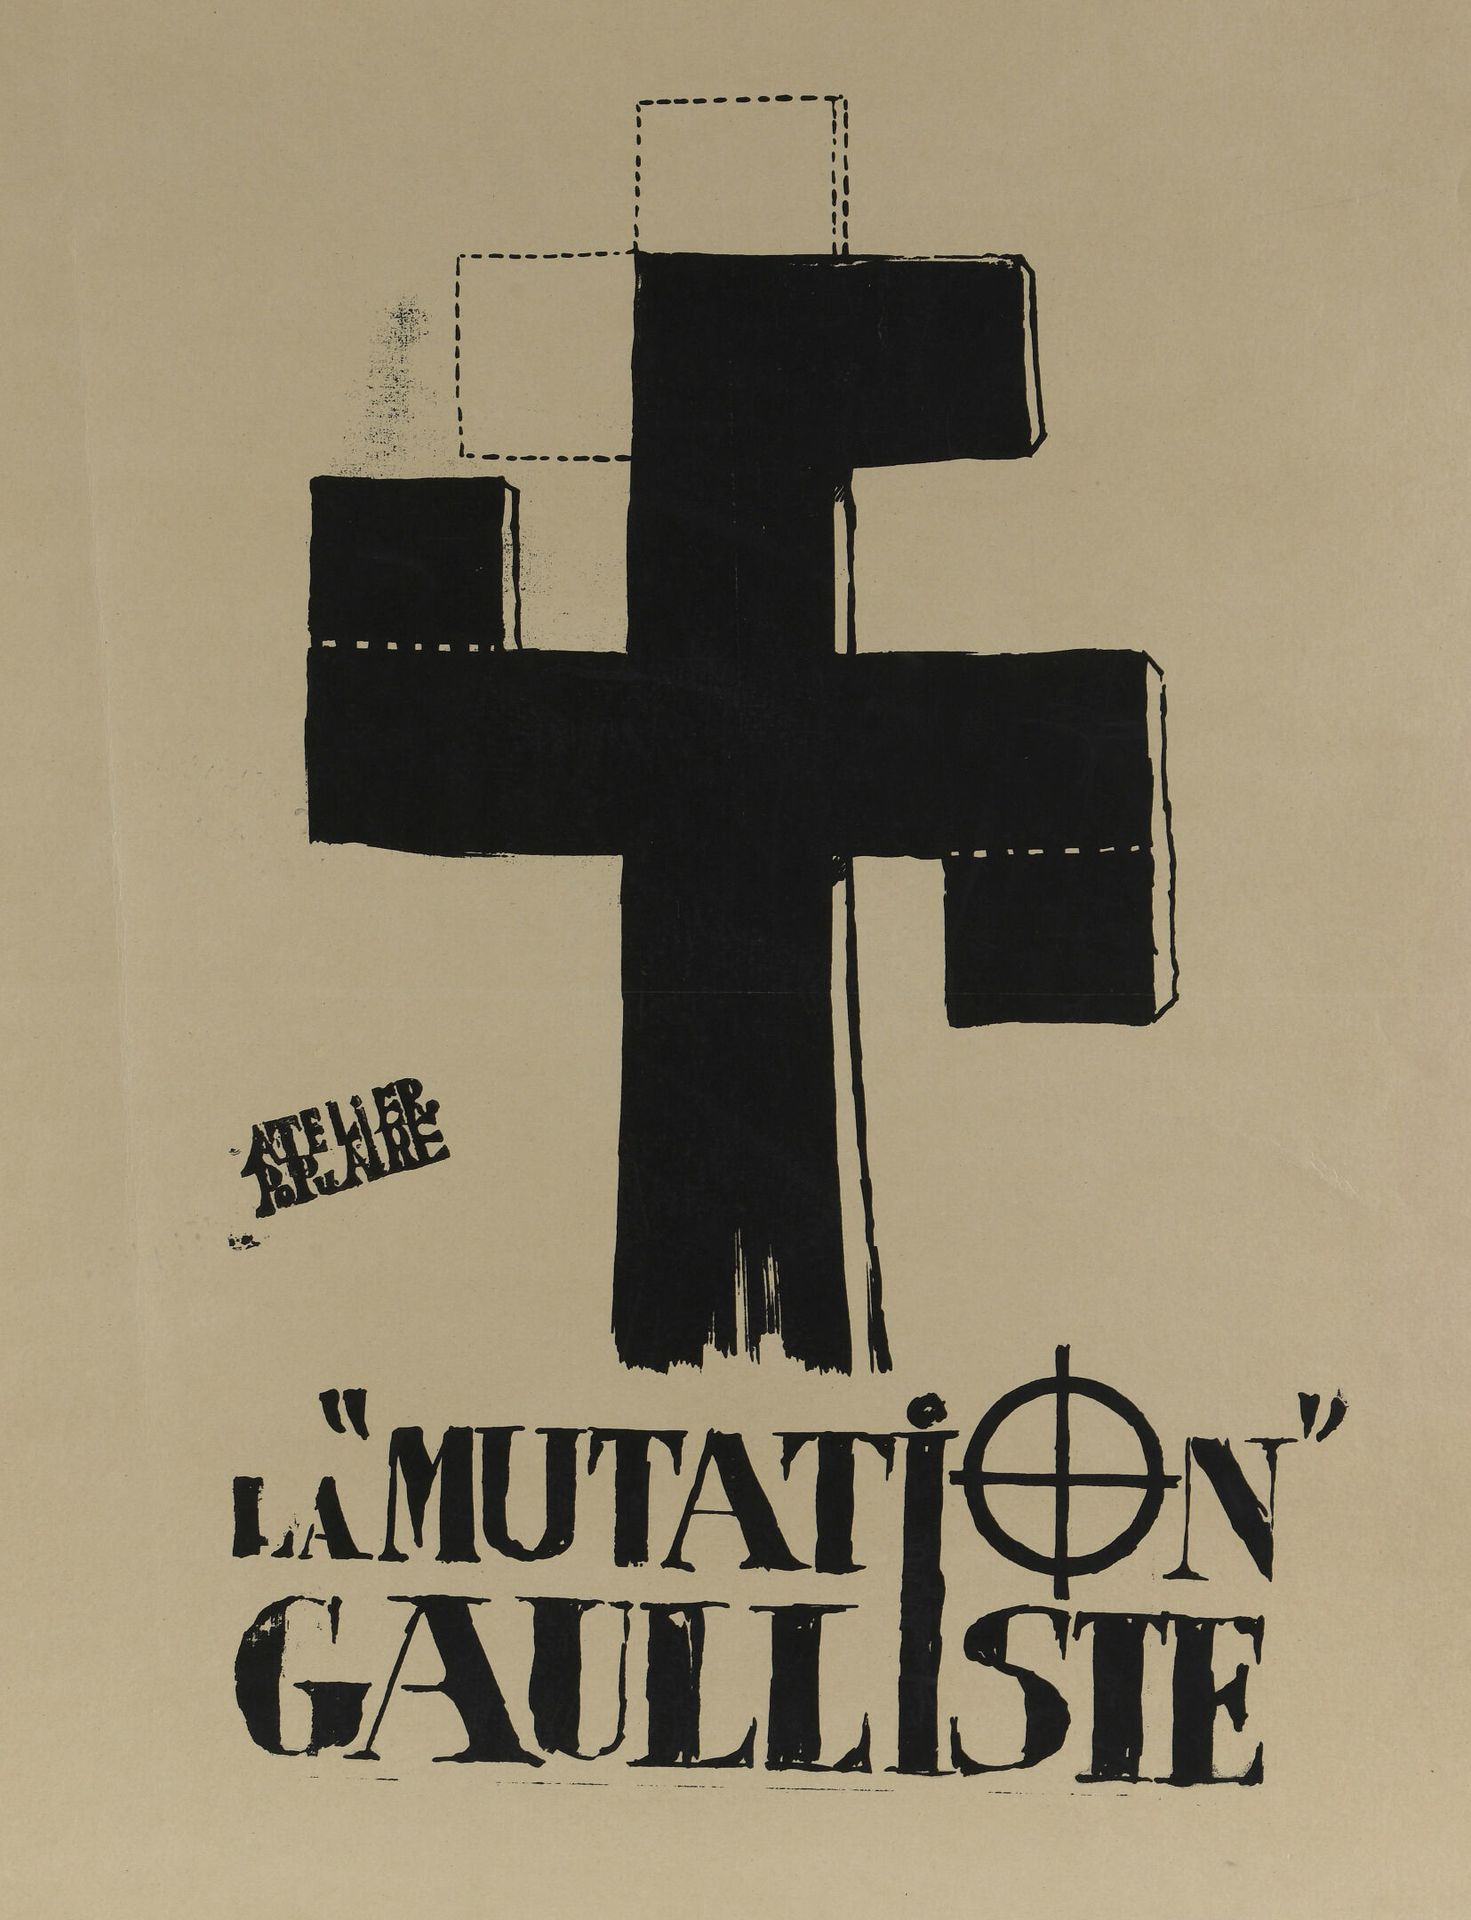 Null [1968年5月的海报]

人民工作室

高卢雄鸡的变异

灰色纸上的黑色丝网印刷，左中部有工作室的湿印章

H.75厘米 - 宽59.5厘米

帆布&hellip;